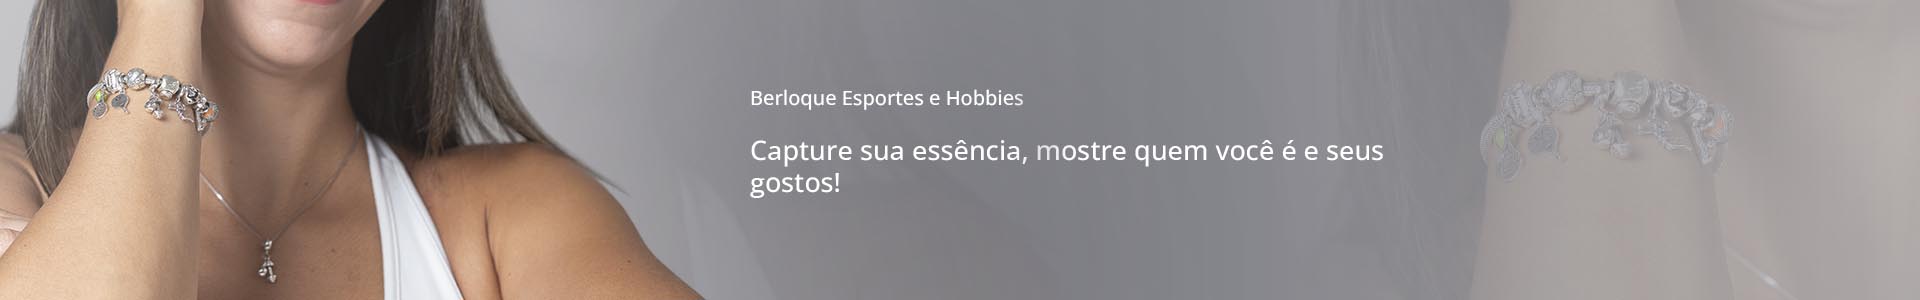 colecao-berloque-esportes-e-hobbies-prata925